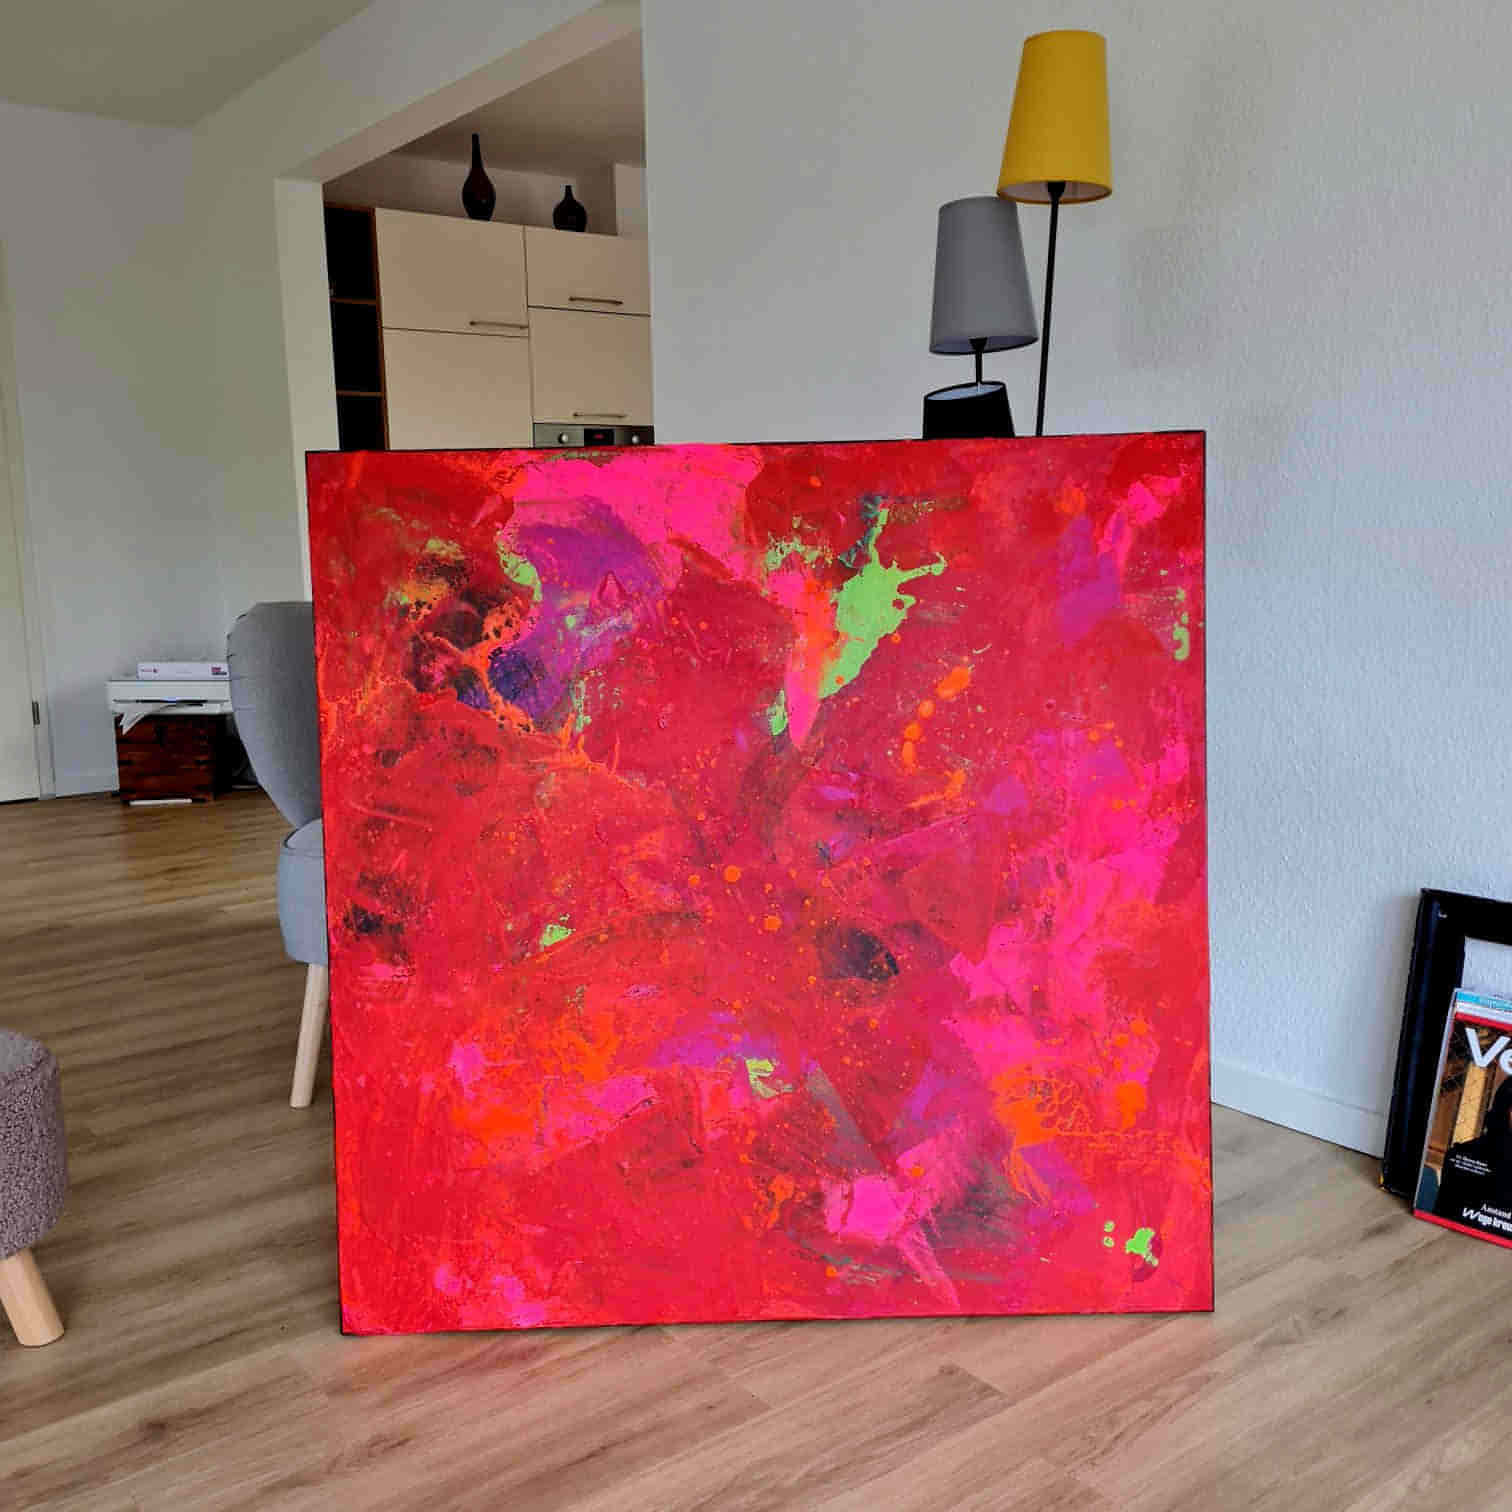 Auftragskunst, abstrakte Bilder, Rotes schwungvolles Gemälde als Auftragsbild - Leidenschaft und Energie,rote-grosse-bilder-kunstwerke, abstrakte Bilder kaufen ,